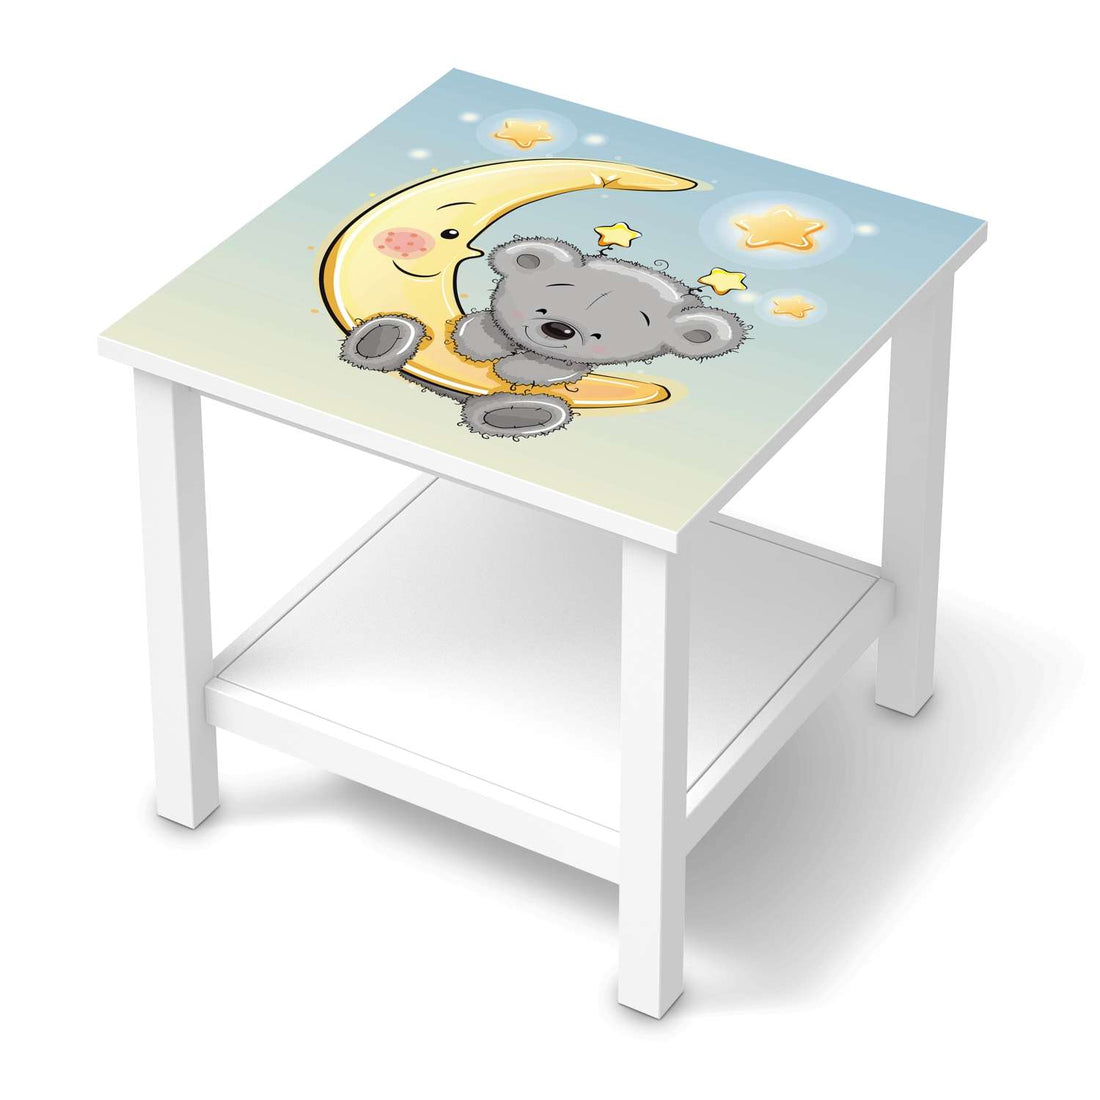 Möbel Klebefolie Teddy und Mond - IKEA Hemnes Beistelltisch 55x55 cm  - weiss